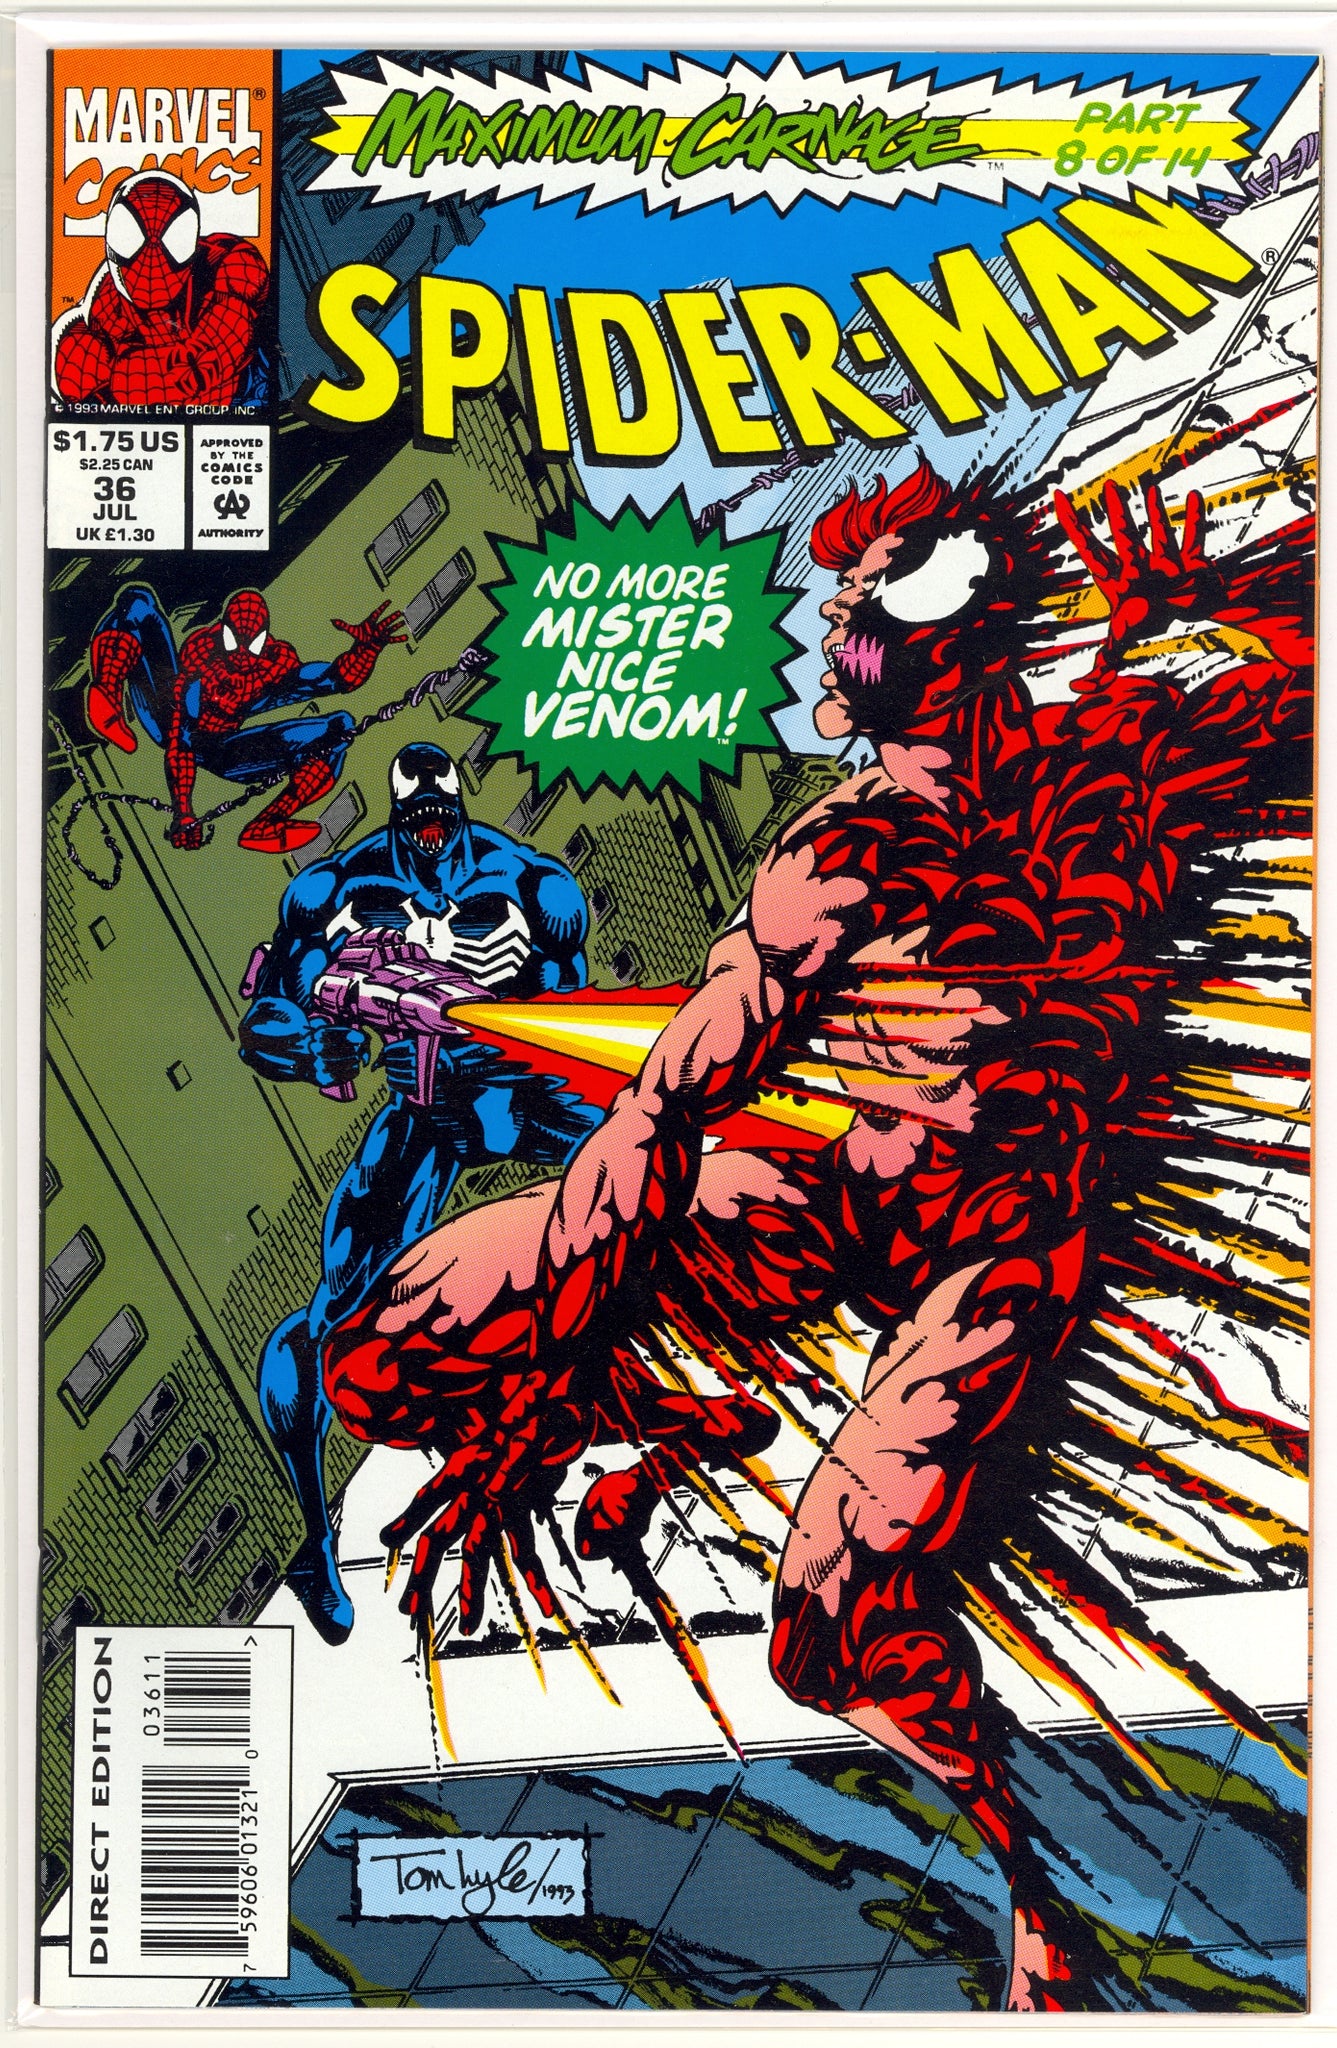 Spider-Man #36 (1993) Carnage